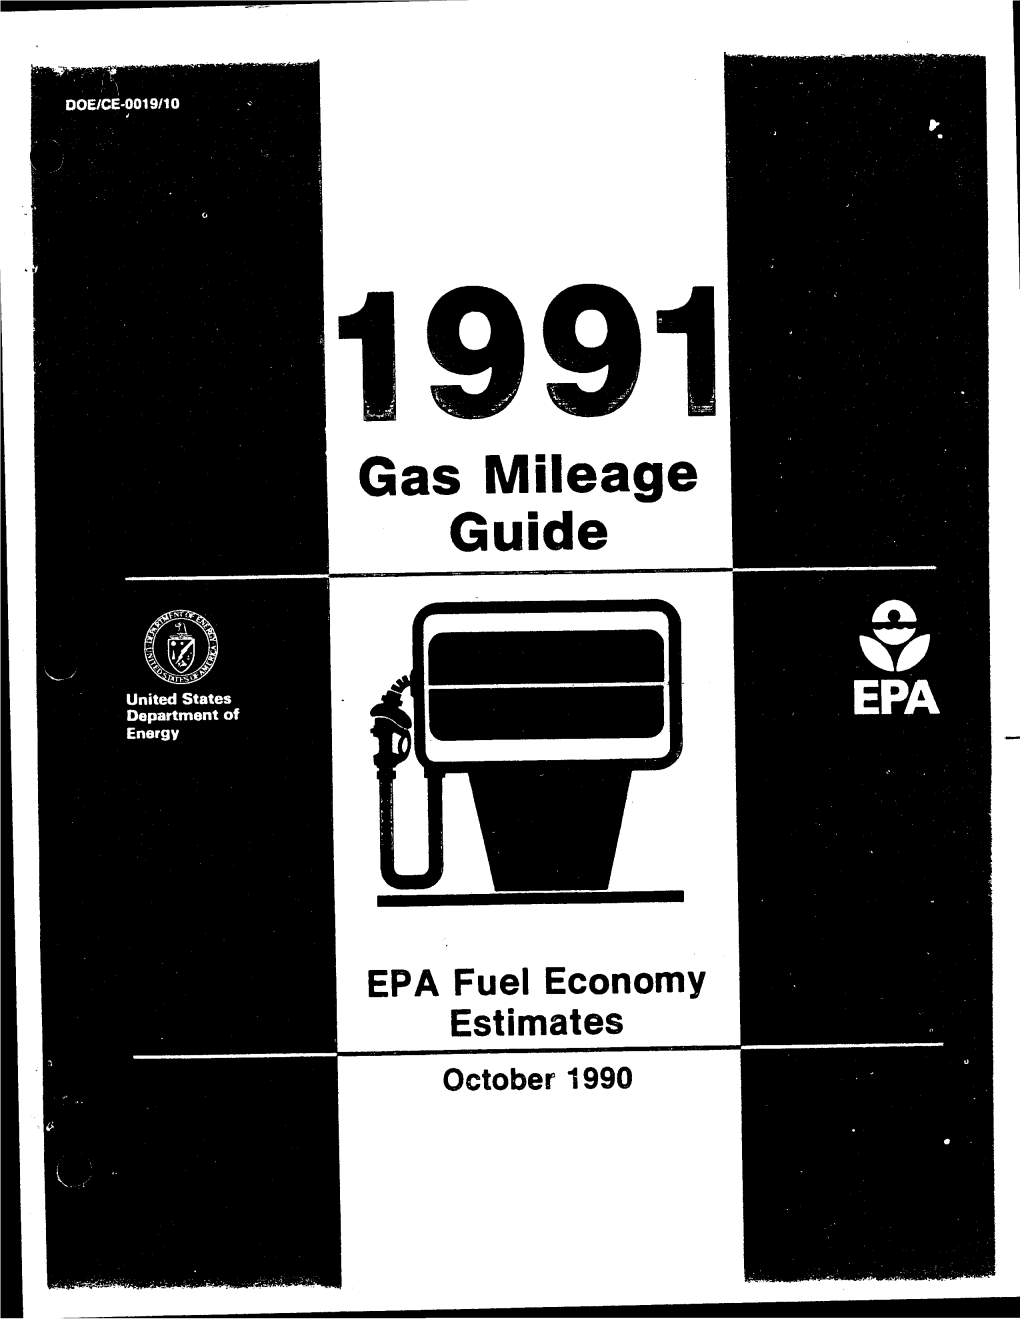 1991 Gas Mileage Guide: EPA Fuel Economy Estimates